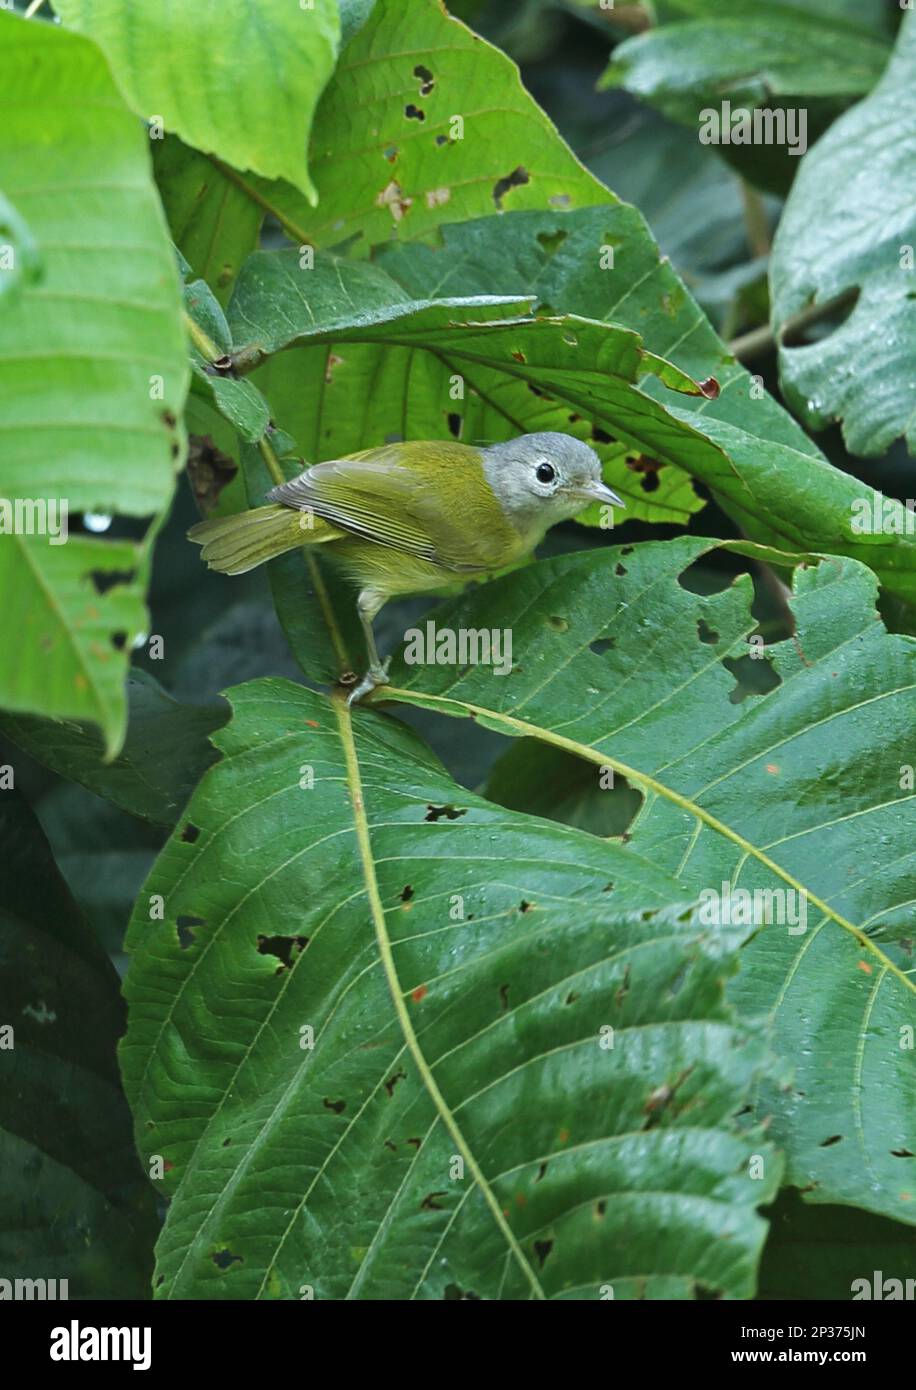 Dwarf Vireo (Hylophilus decurtatus decurtatus) adult, sitting on leaf, Lancetilla Botanical Garden, Honduras Stock Photo